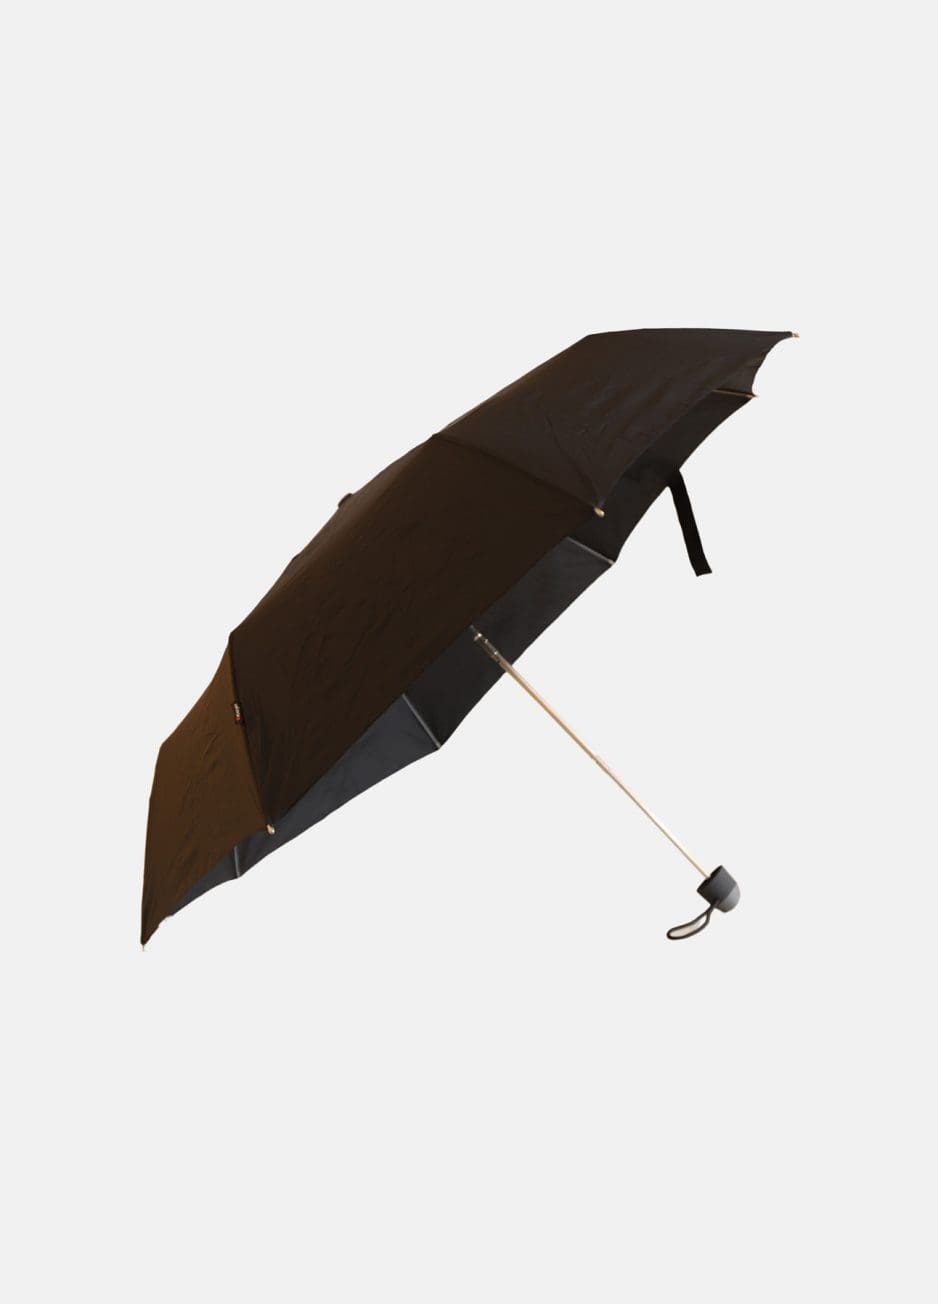 Sort E.051 paraply fra Knirps